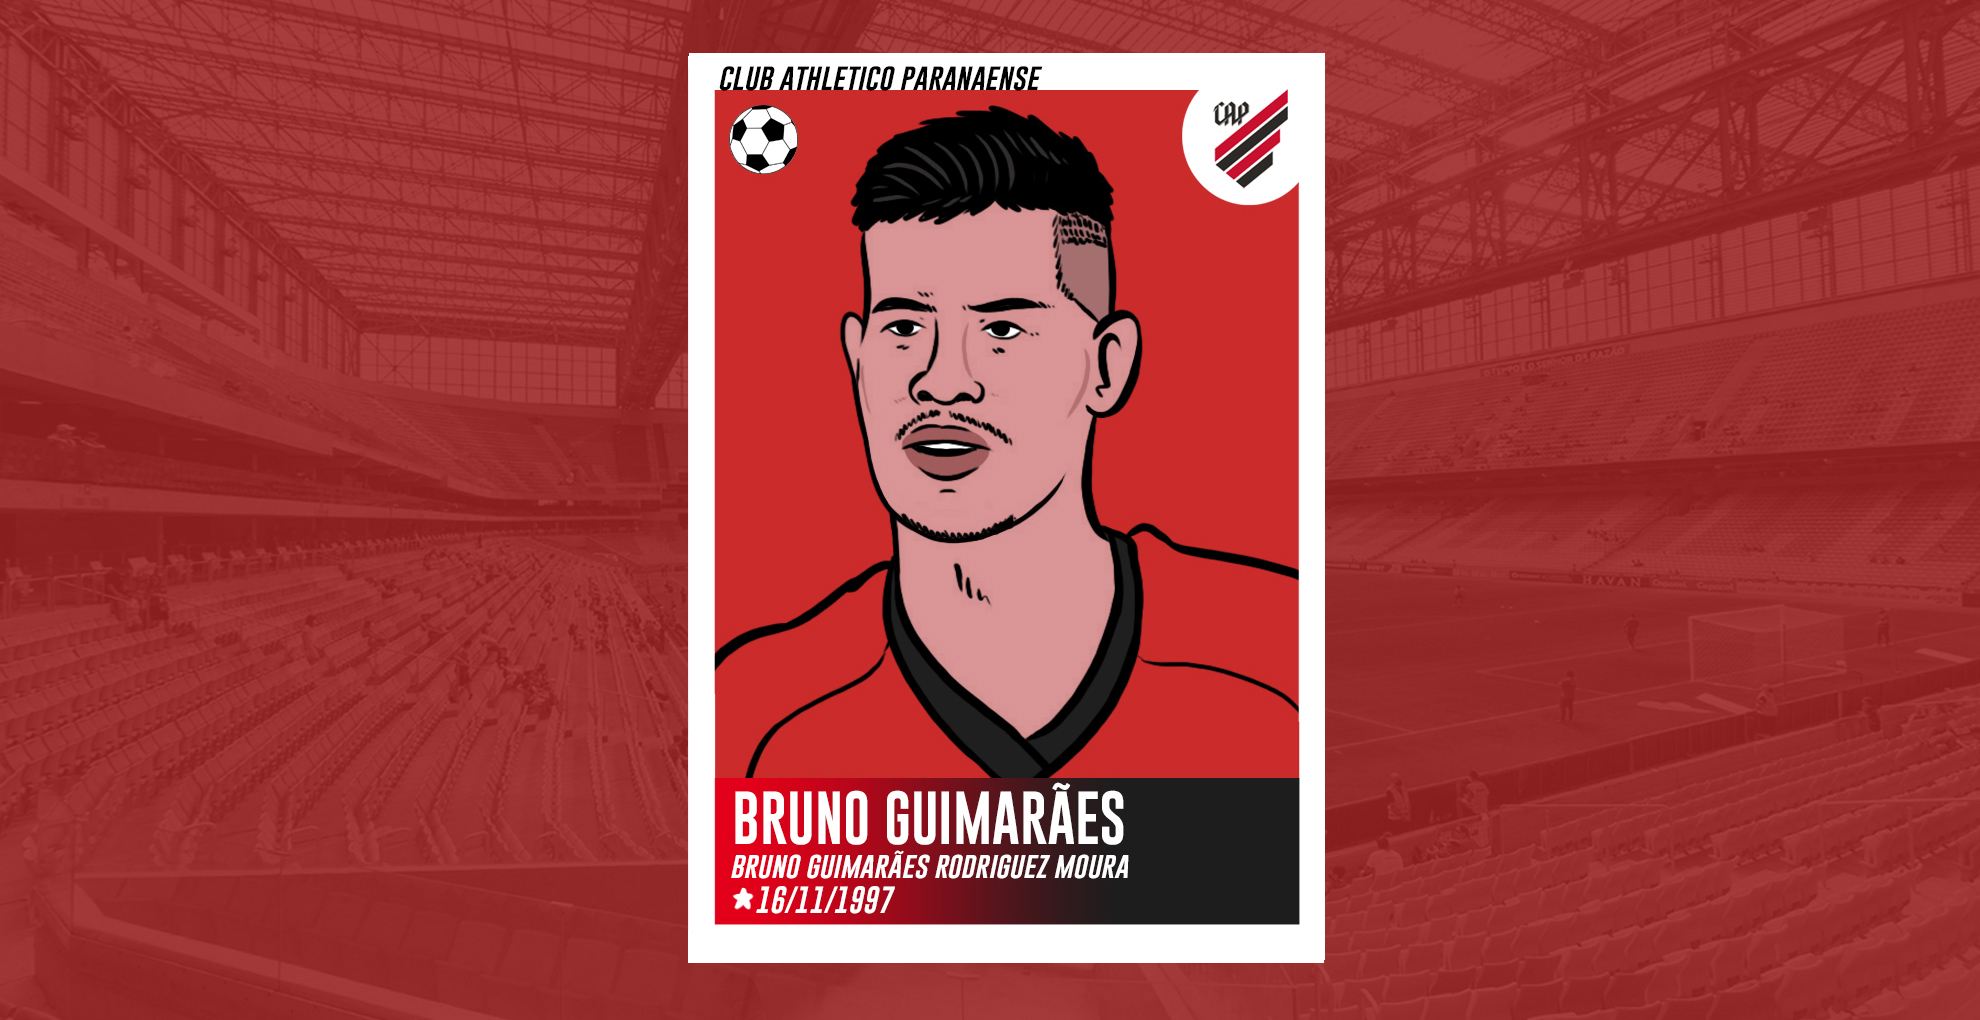  Bruno Guimarães, o craque da Geração Z  